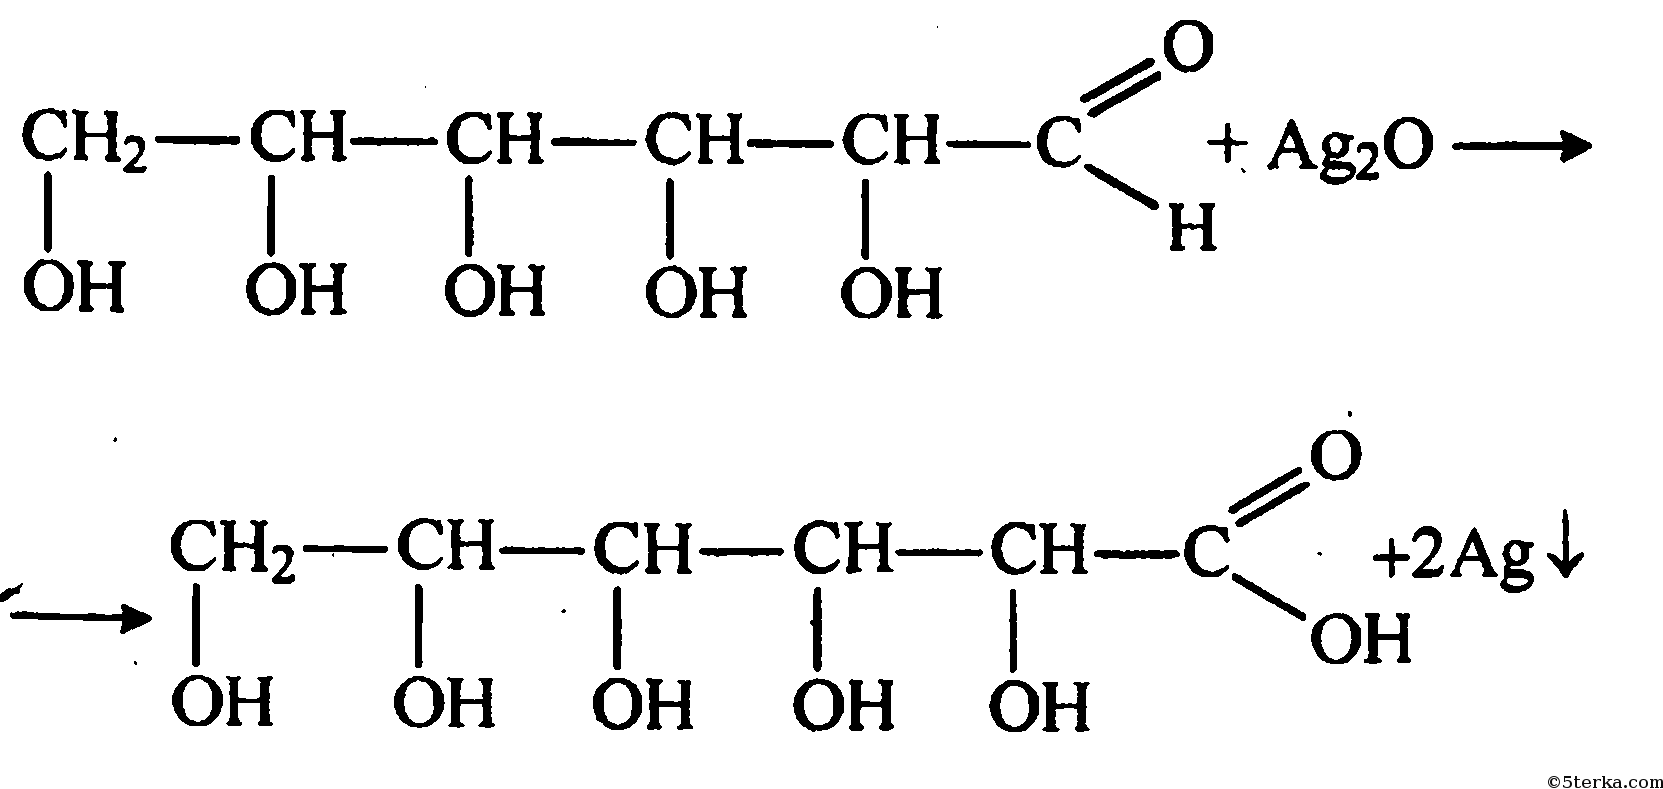 Ag2o h2o реакция. C6h12o6 Глюкоза. Глюкоза ag2o уравнение реакции. Глюкоза вещество с двойственной функцией альдегидоспирт. Химические реакции Глюкозы.